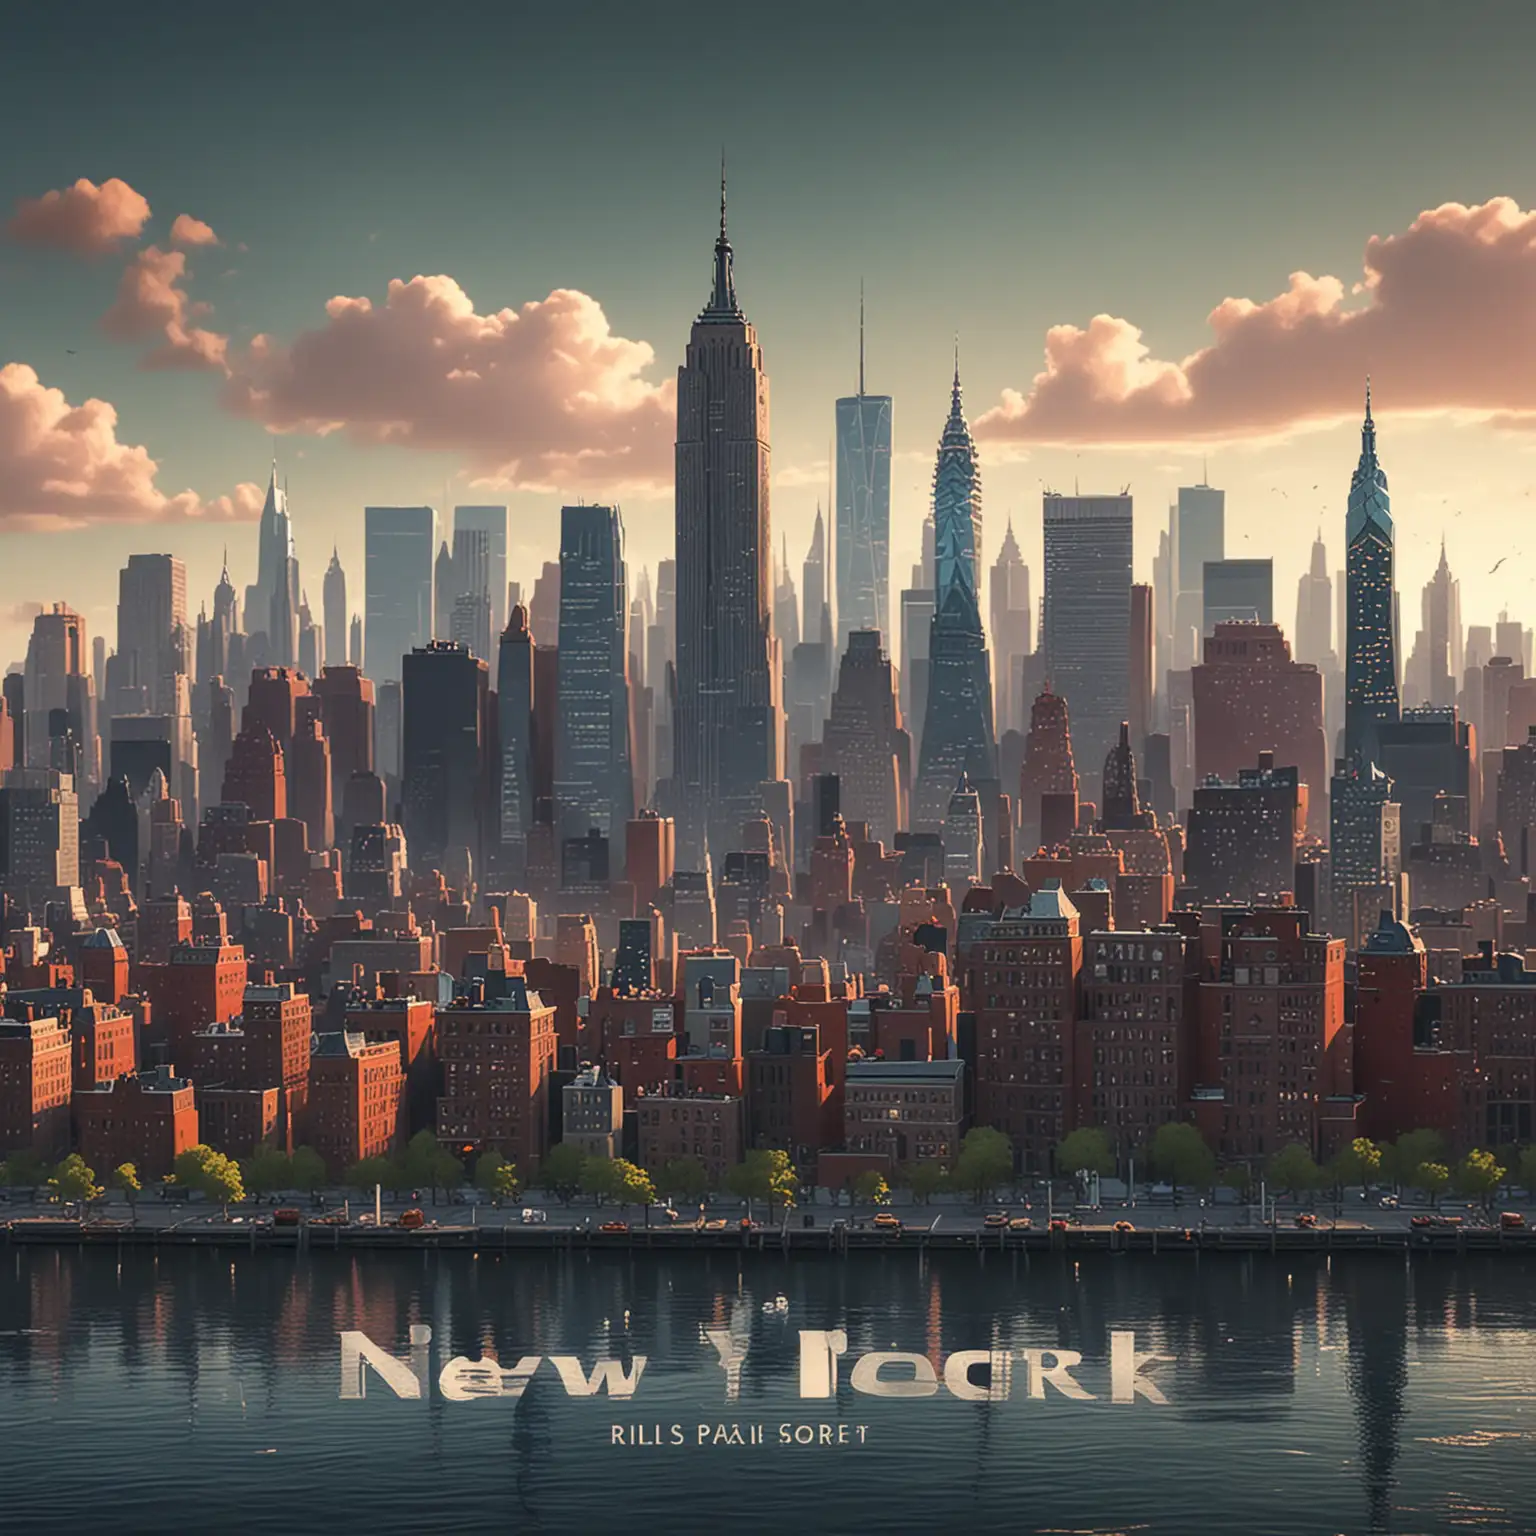 new york city skyline in pixar style